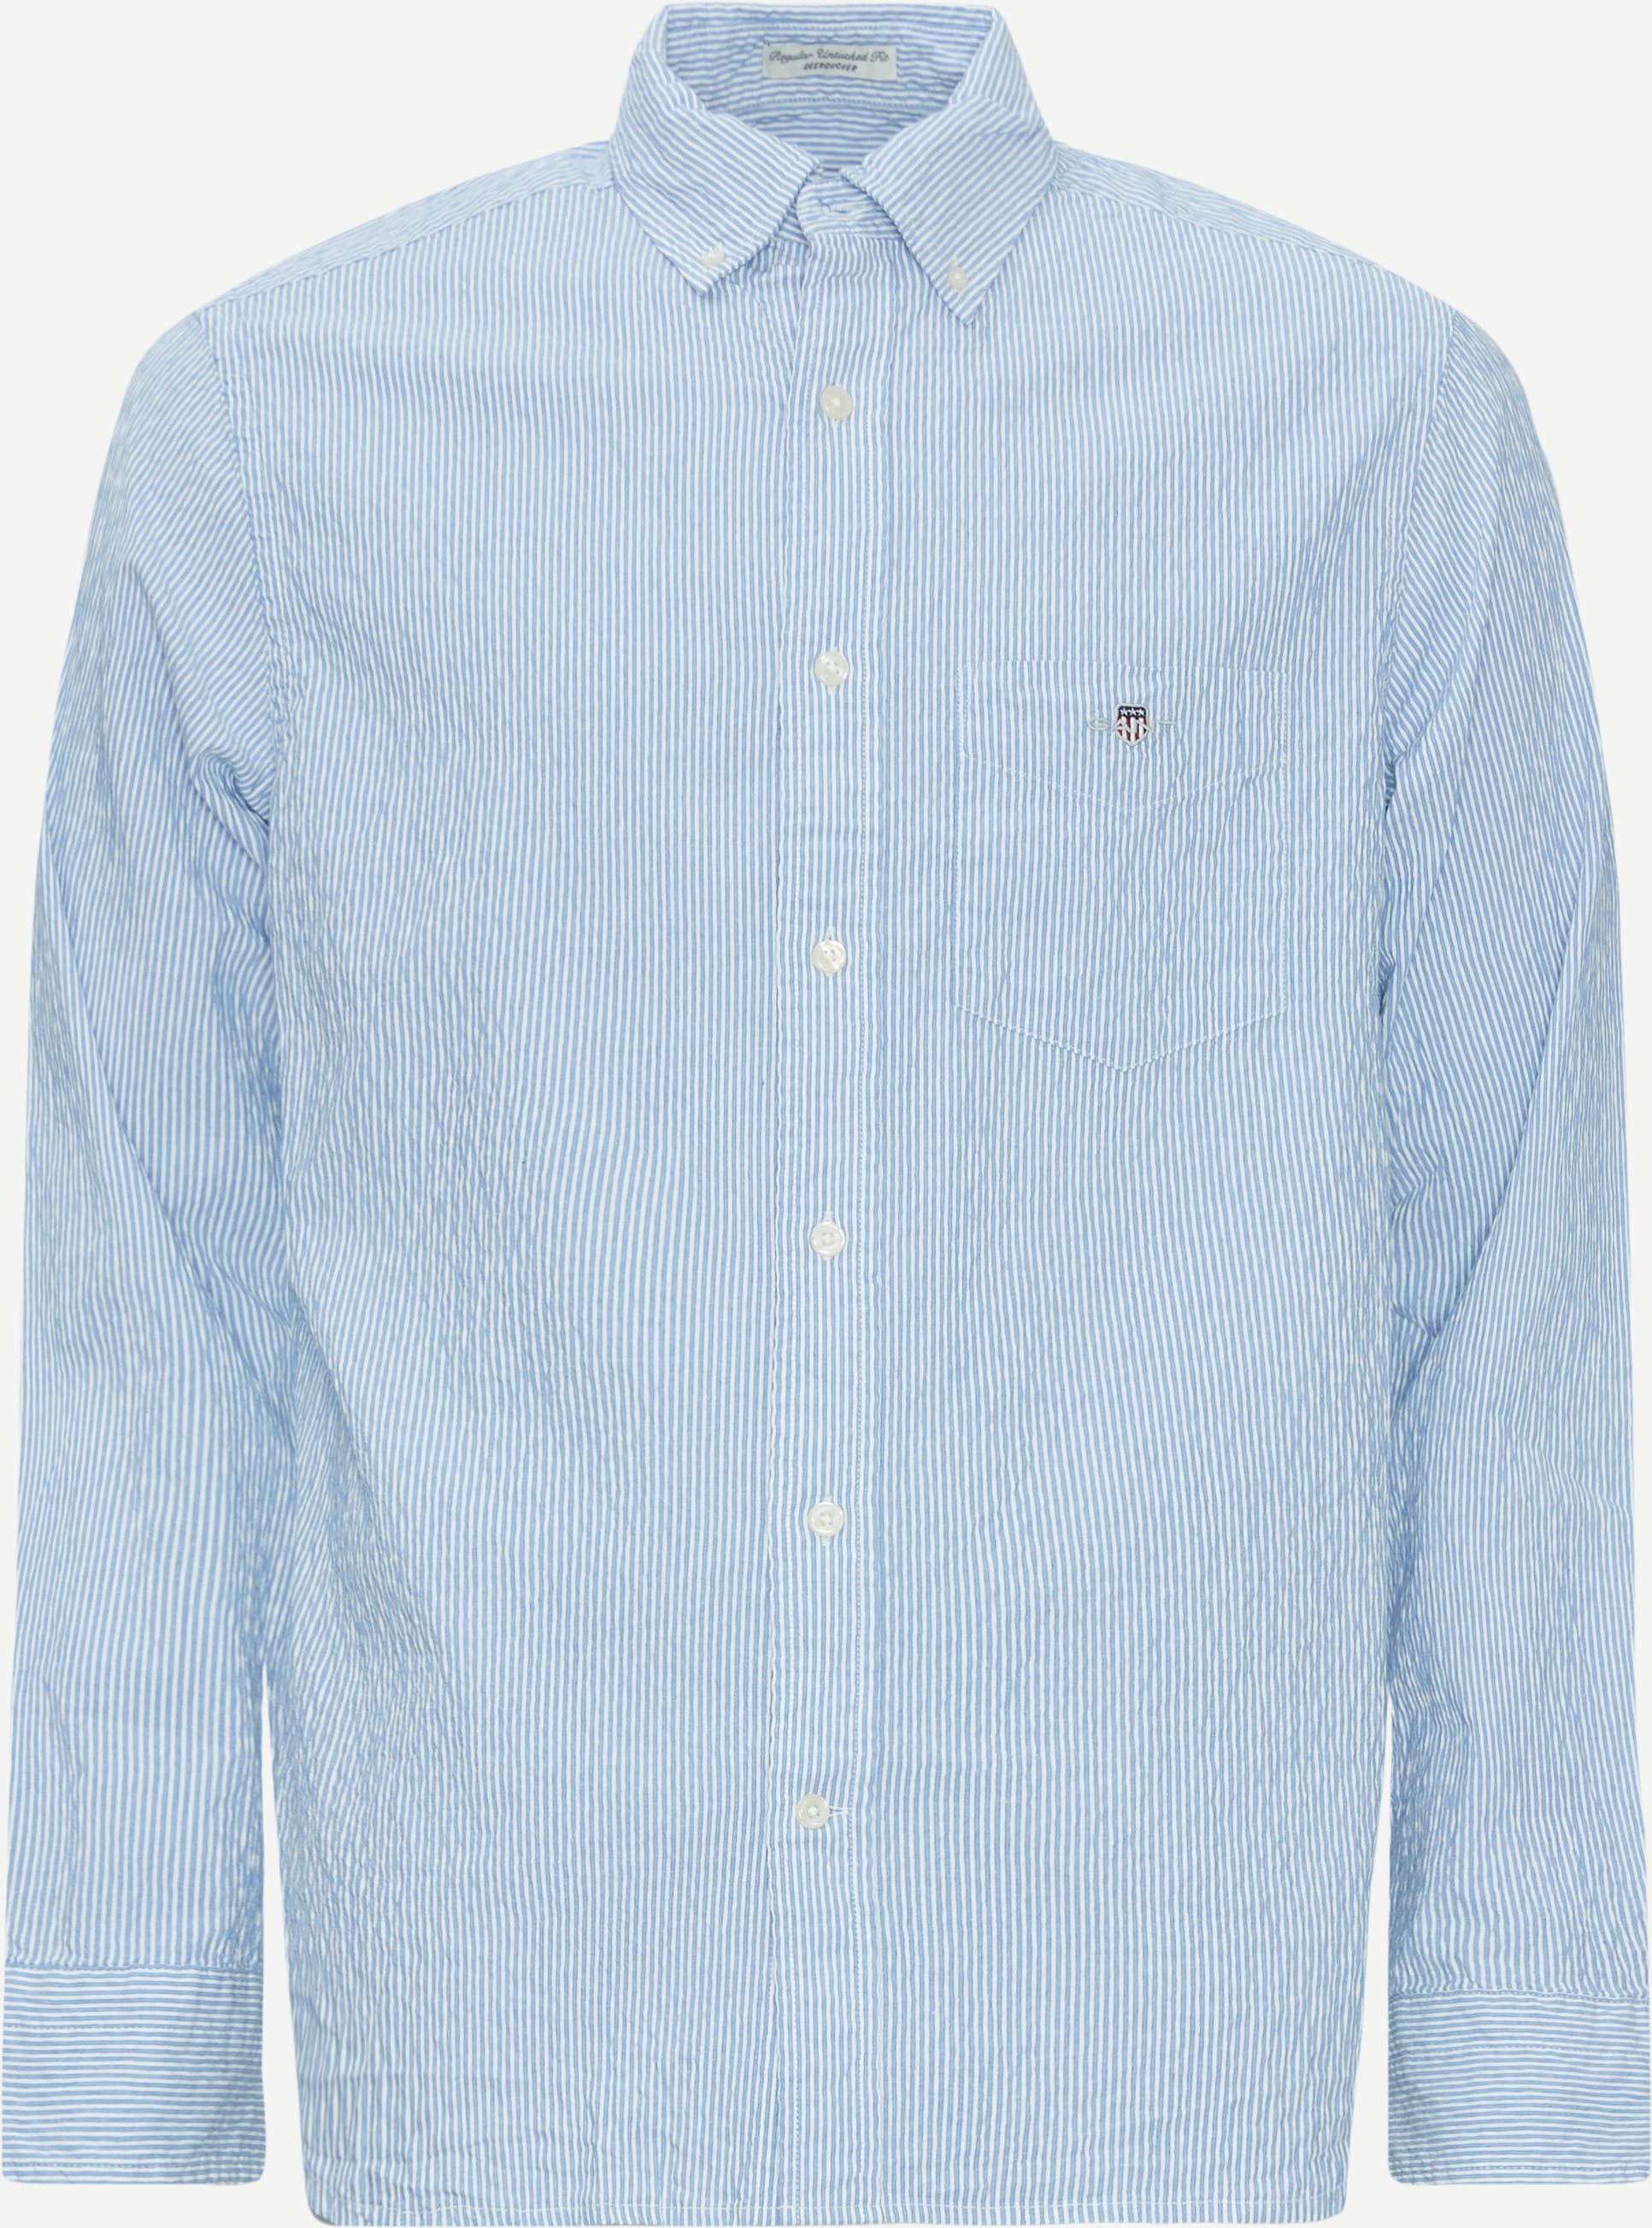 Gant Skjortor REG SEERSUCKER STRIPE SHIRT 3240063 Blå